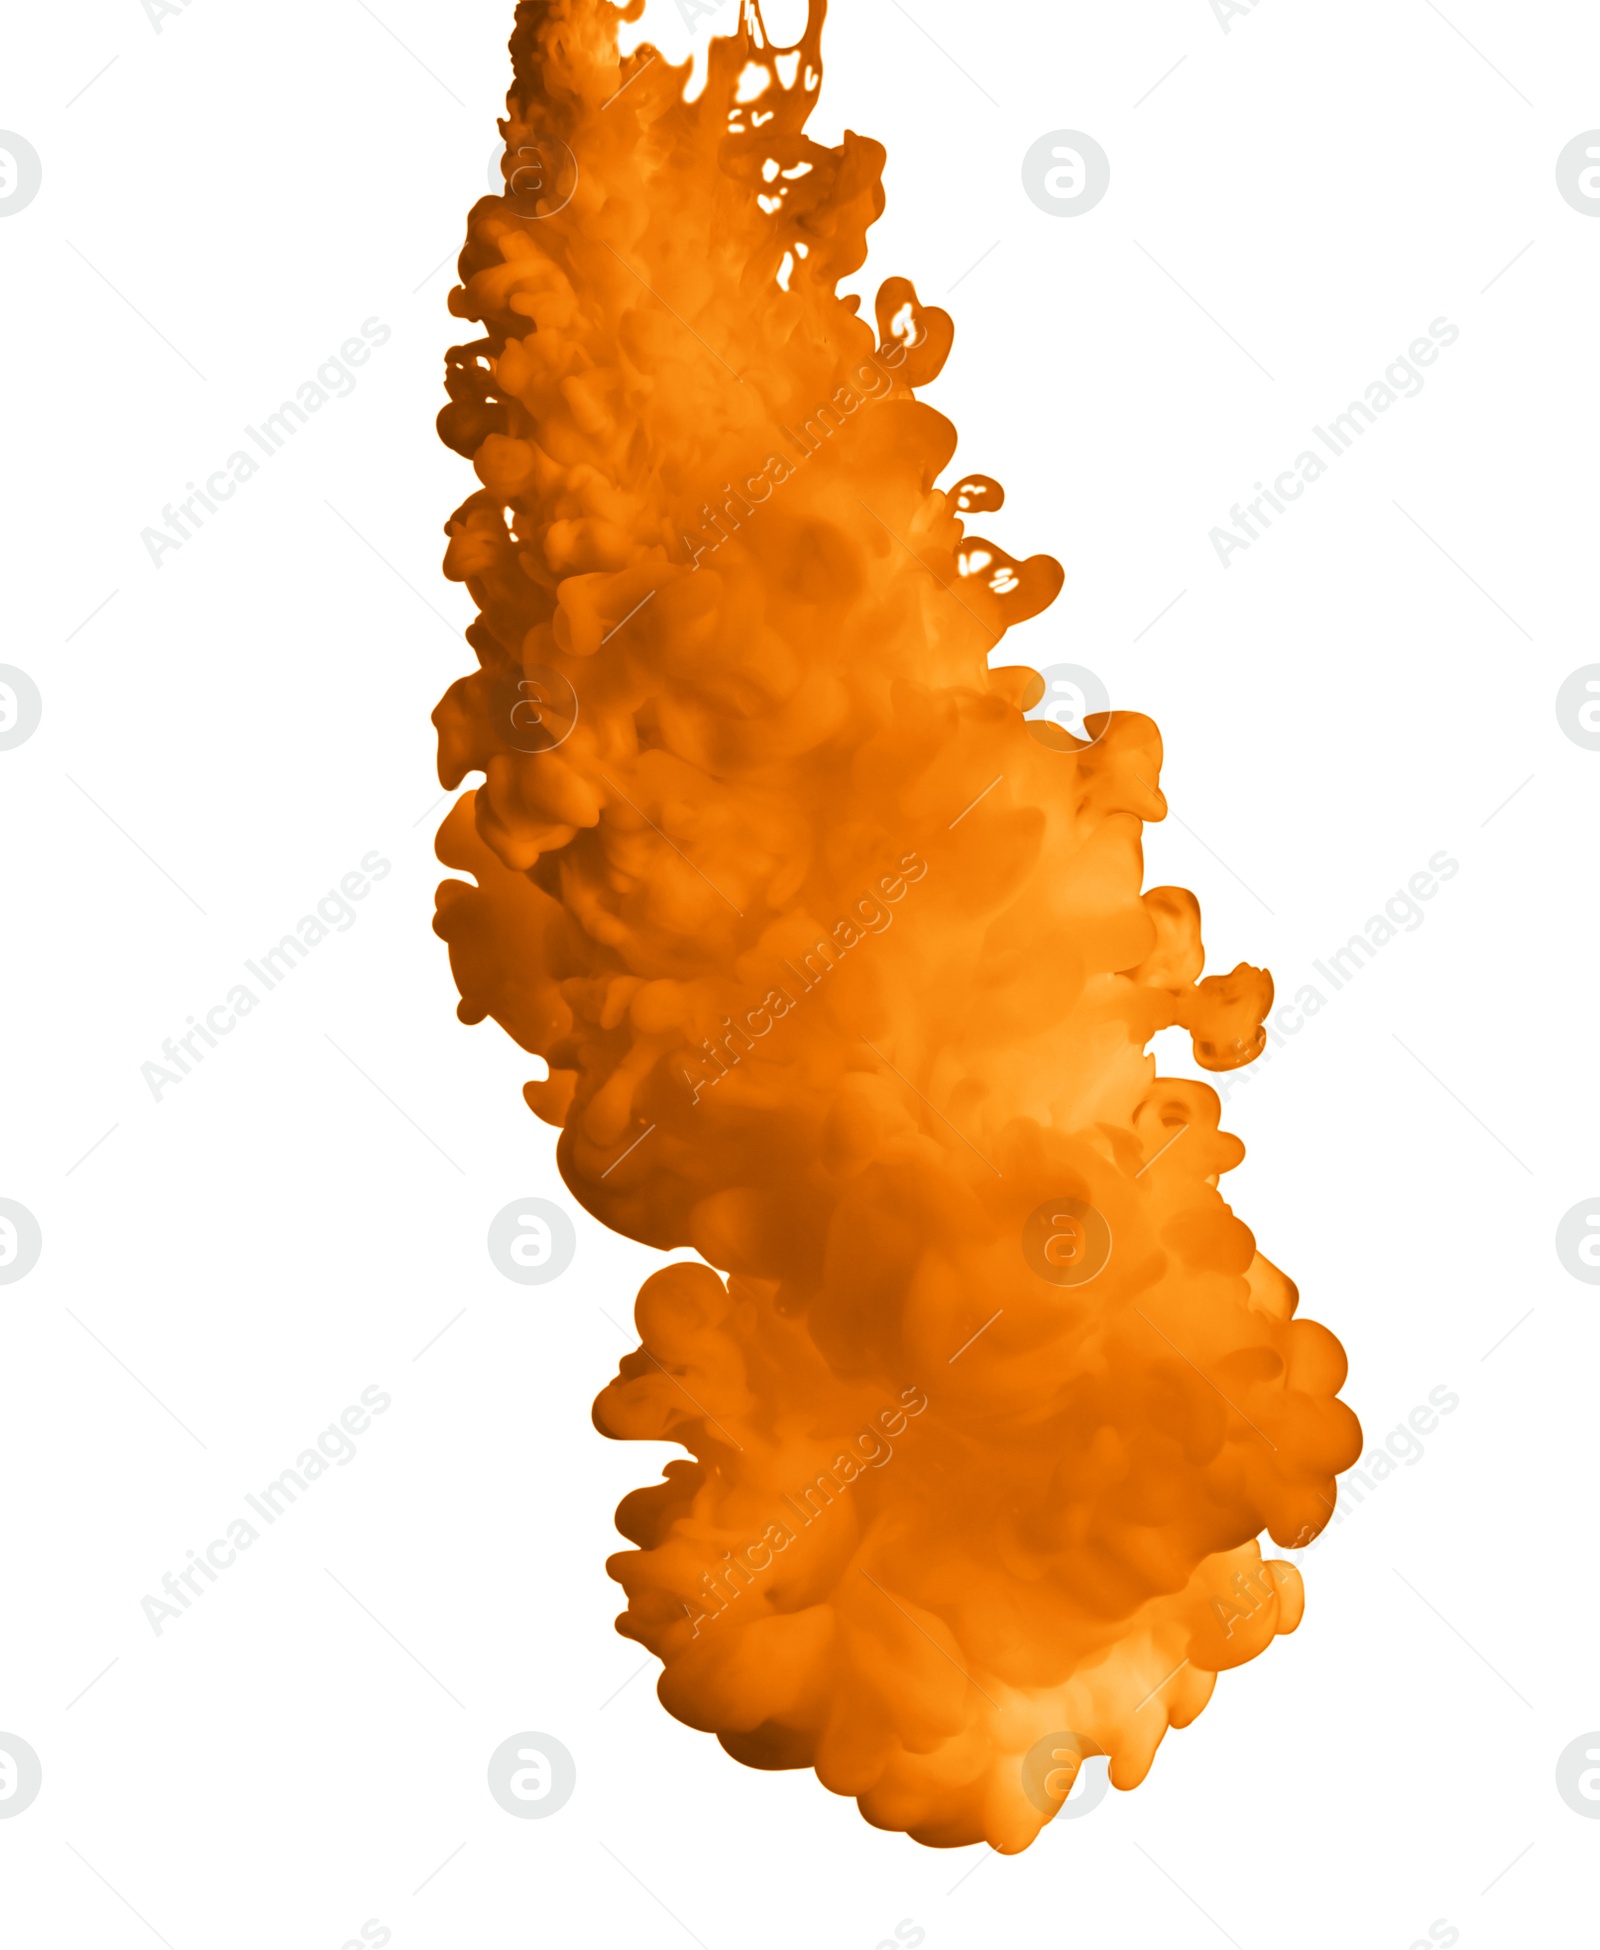 Photo of Splash of orange ink on white background